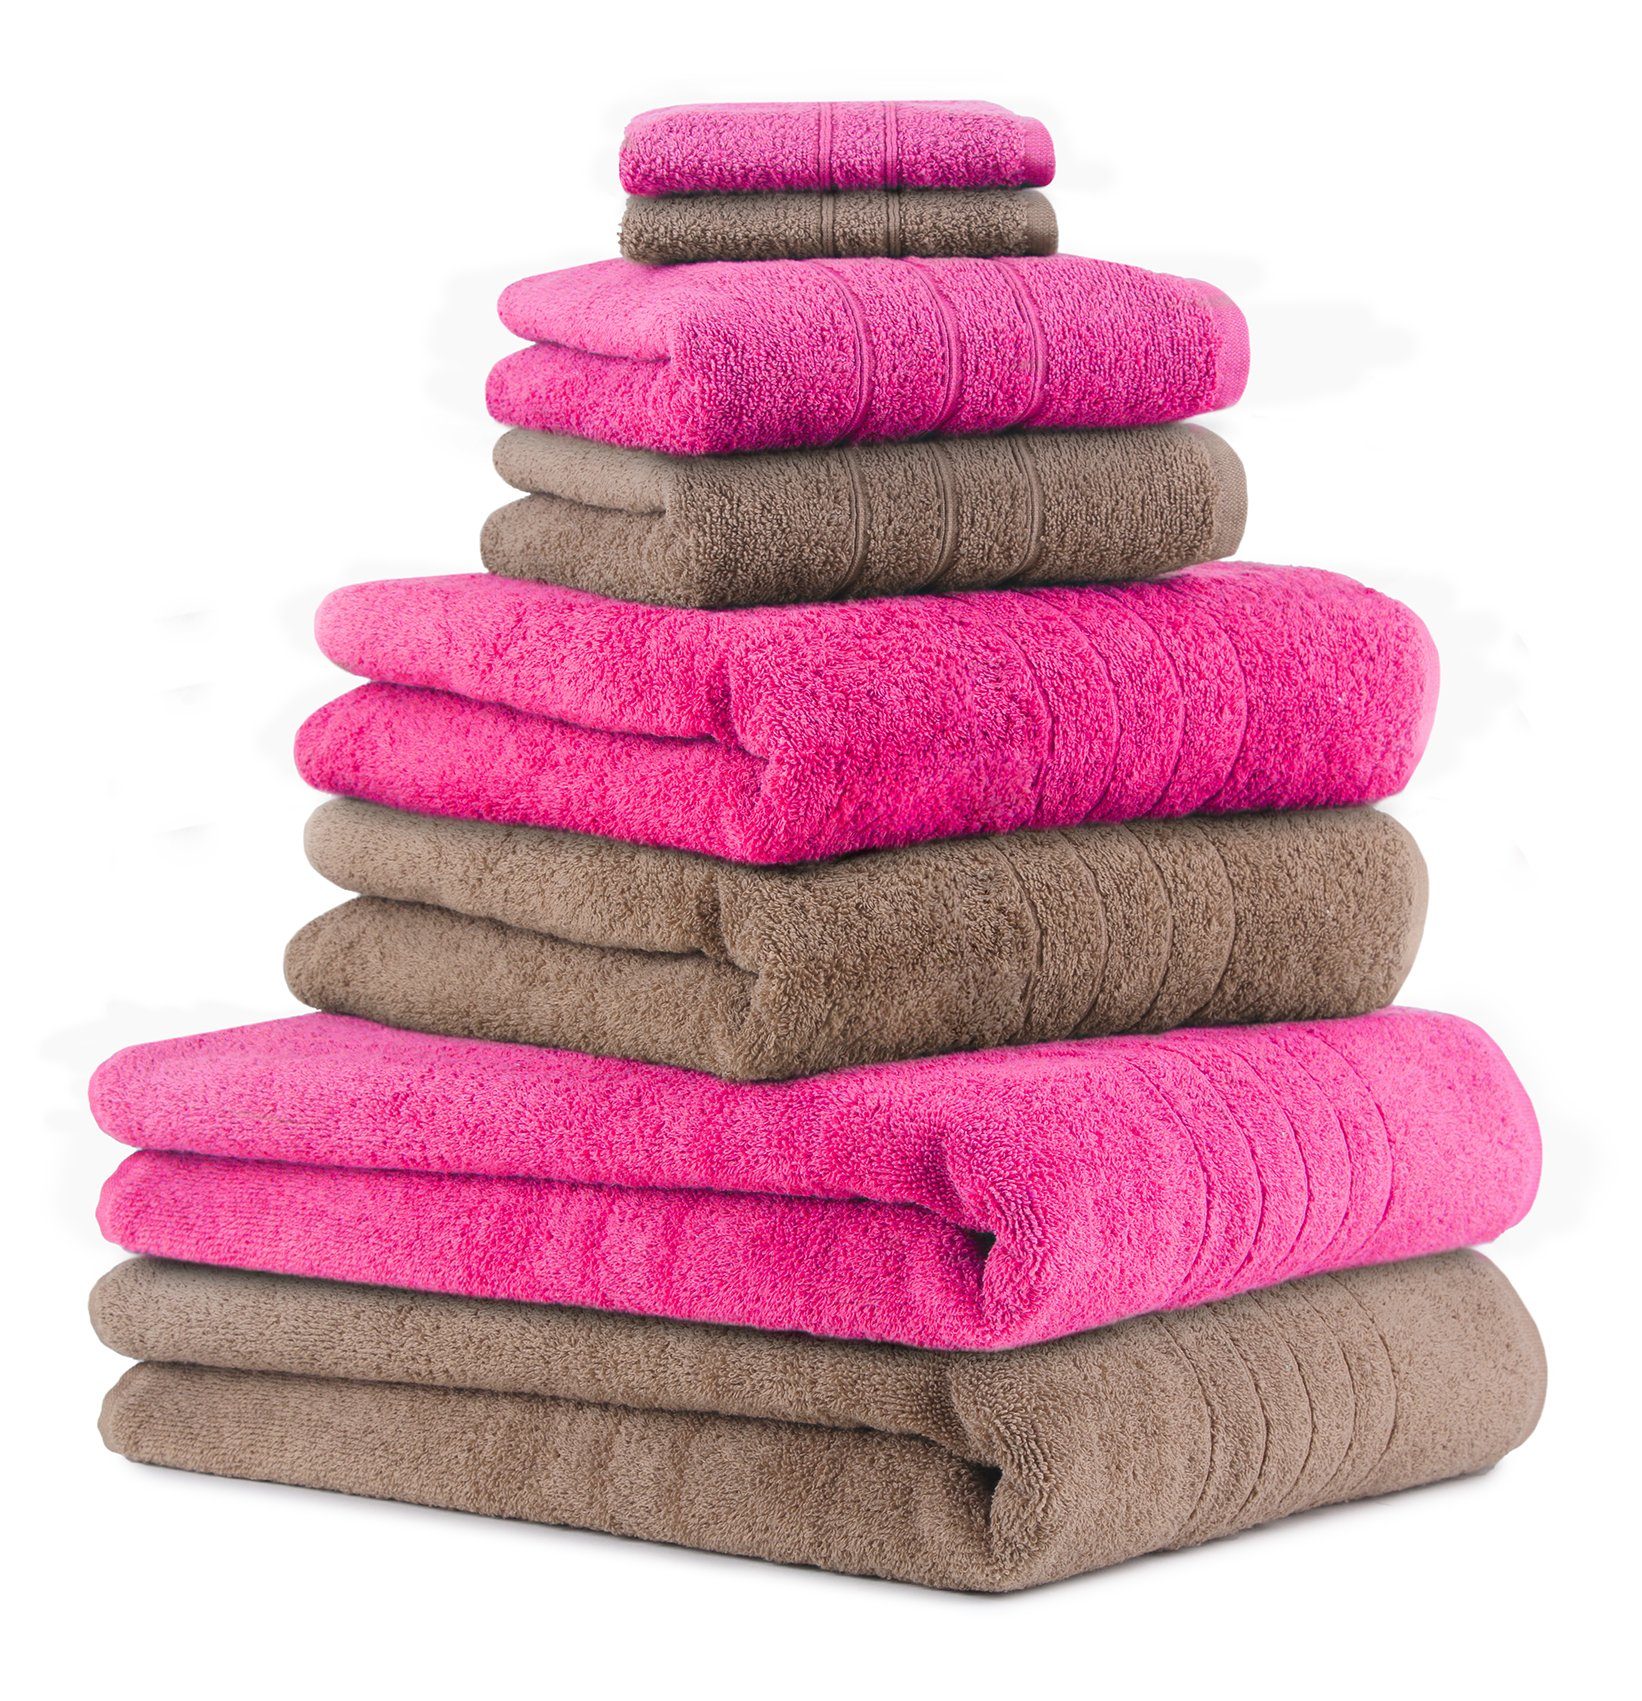 Betz Handtuch Set 8-TLG. Handtuch-Set Deluxe 100% Baumwolle 2 Badetücher 2 Duschtücher 2 Handtücher 2 Seiftücher Farbe Mokka und Fuchsia, 100% Baumwolle, (8-tlg)